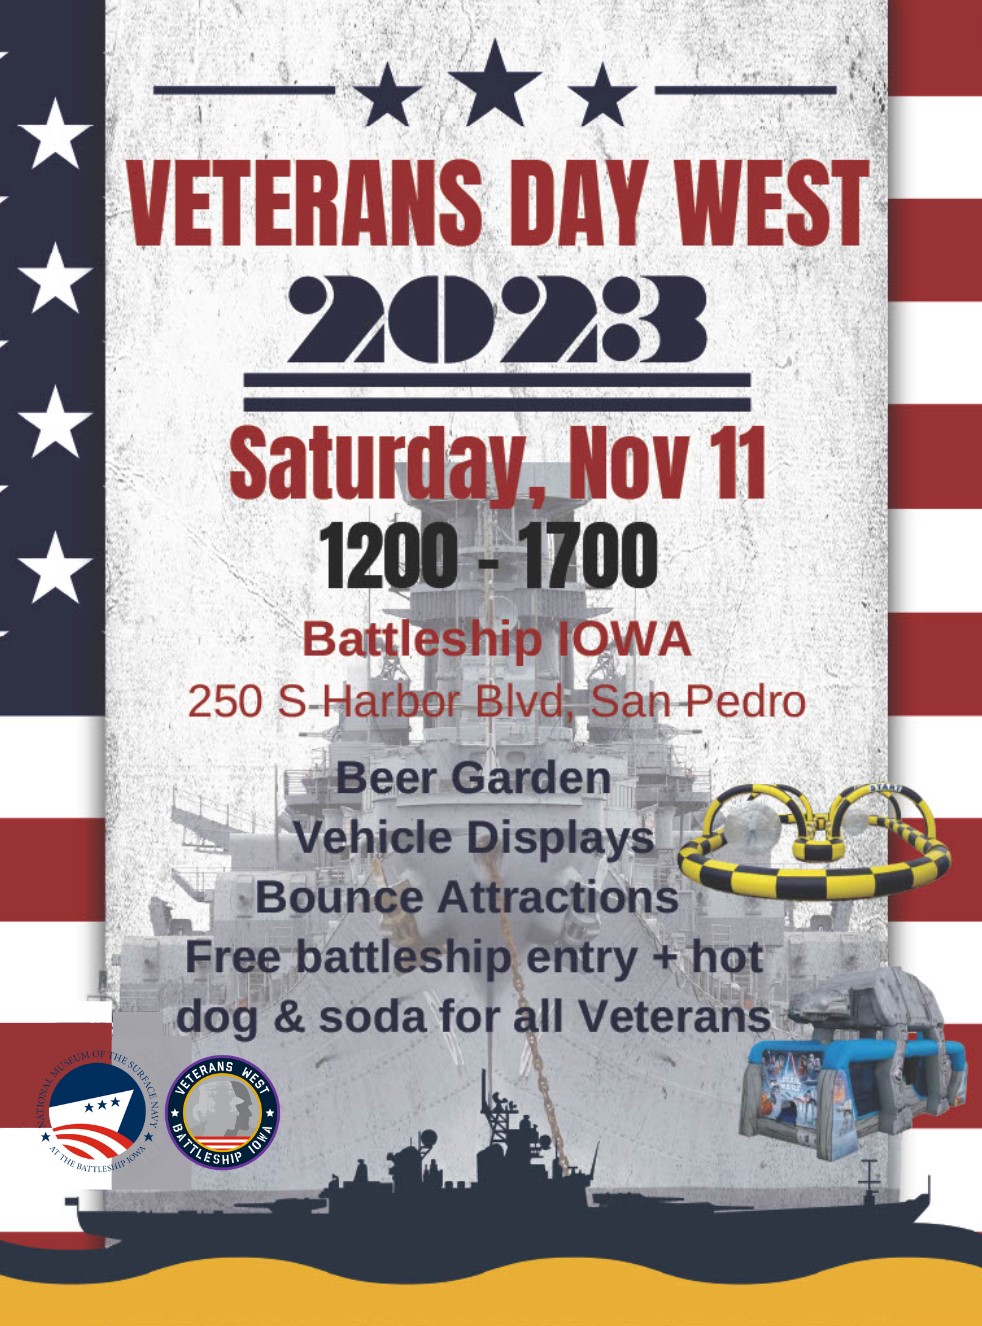 Veterans Day Events at Battleship IOWA Battleship USS Iowa Museum